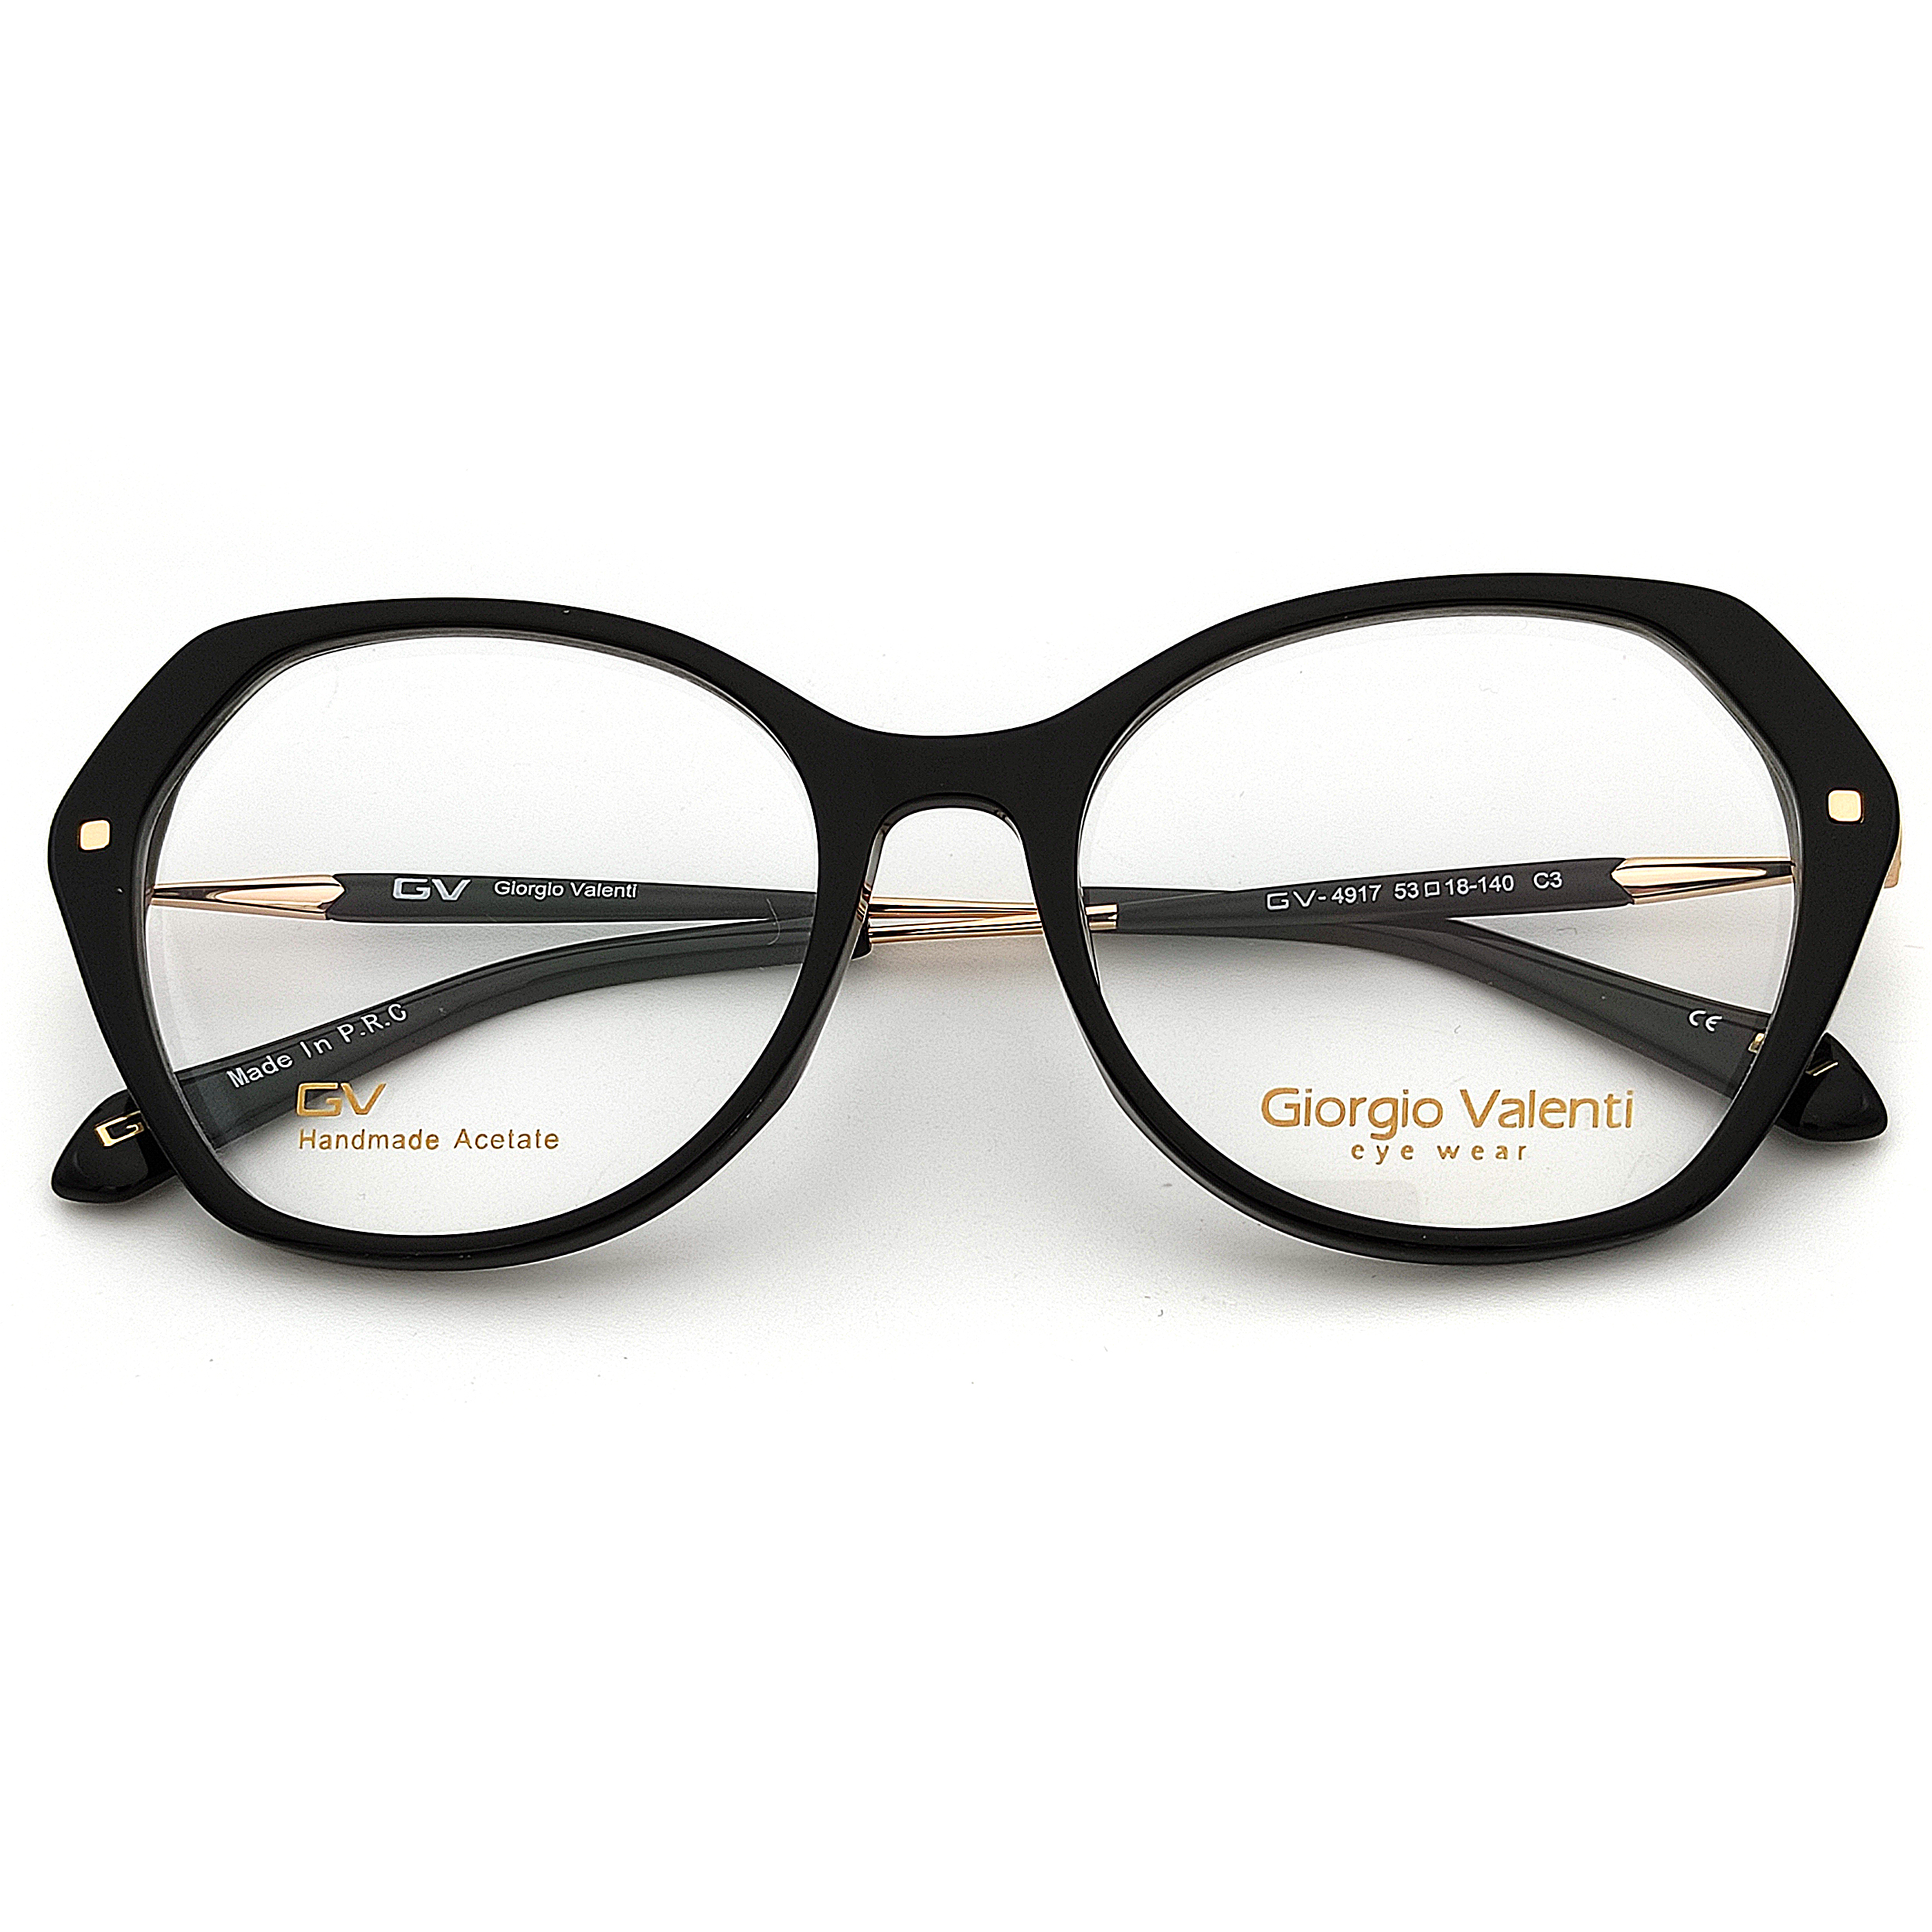 فریم عینک طبی زنانه جورجیو ولنتی مدل GV-4917 C3 -  - 2